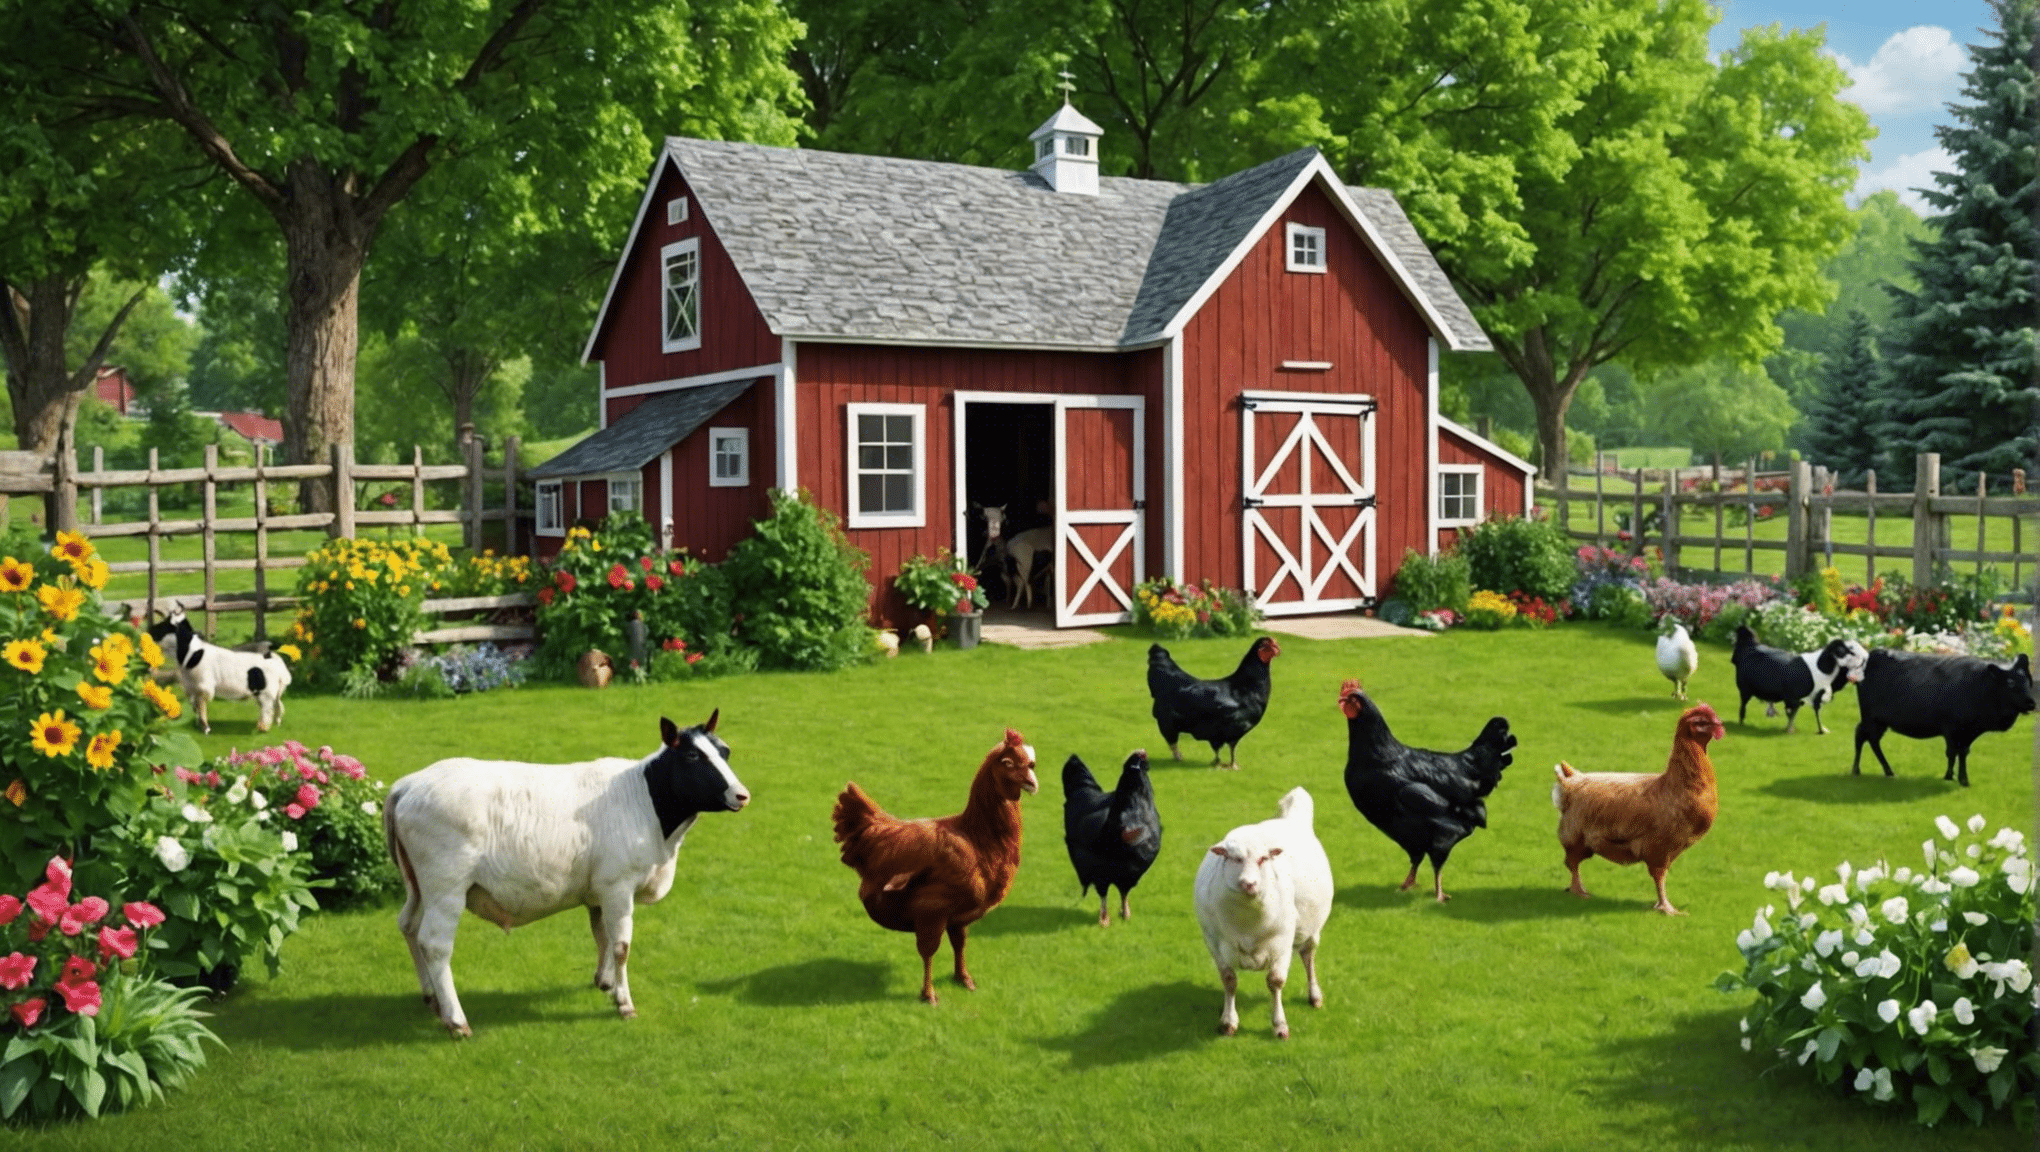 objavte výhody chovu hospodárskych zvierat na dvore pre váš domov a rodinu. dozvedieť sa o chove, starostlivosti a užívaní si hospodárskych zvierat na svojom dvore.